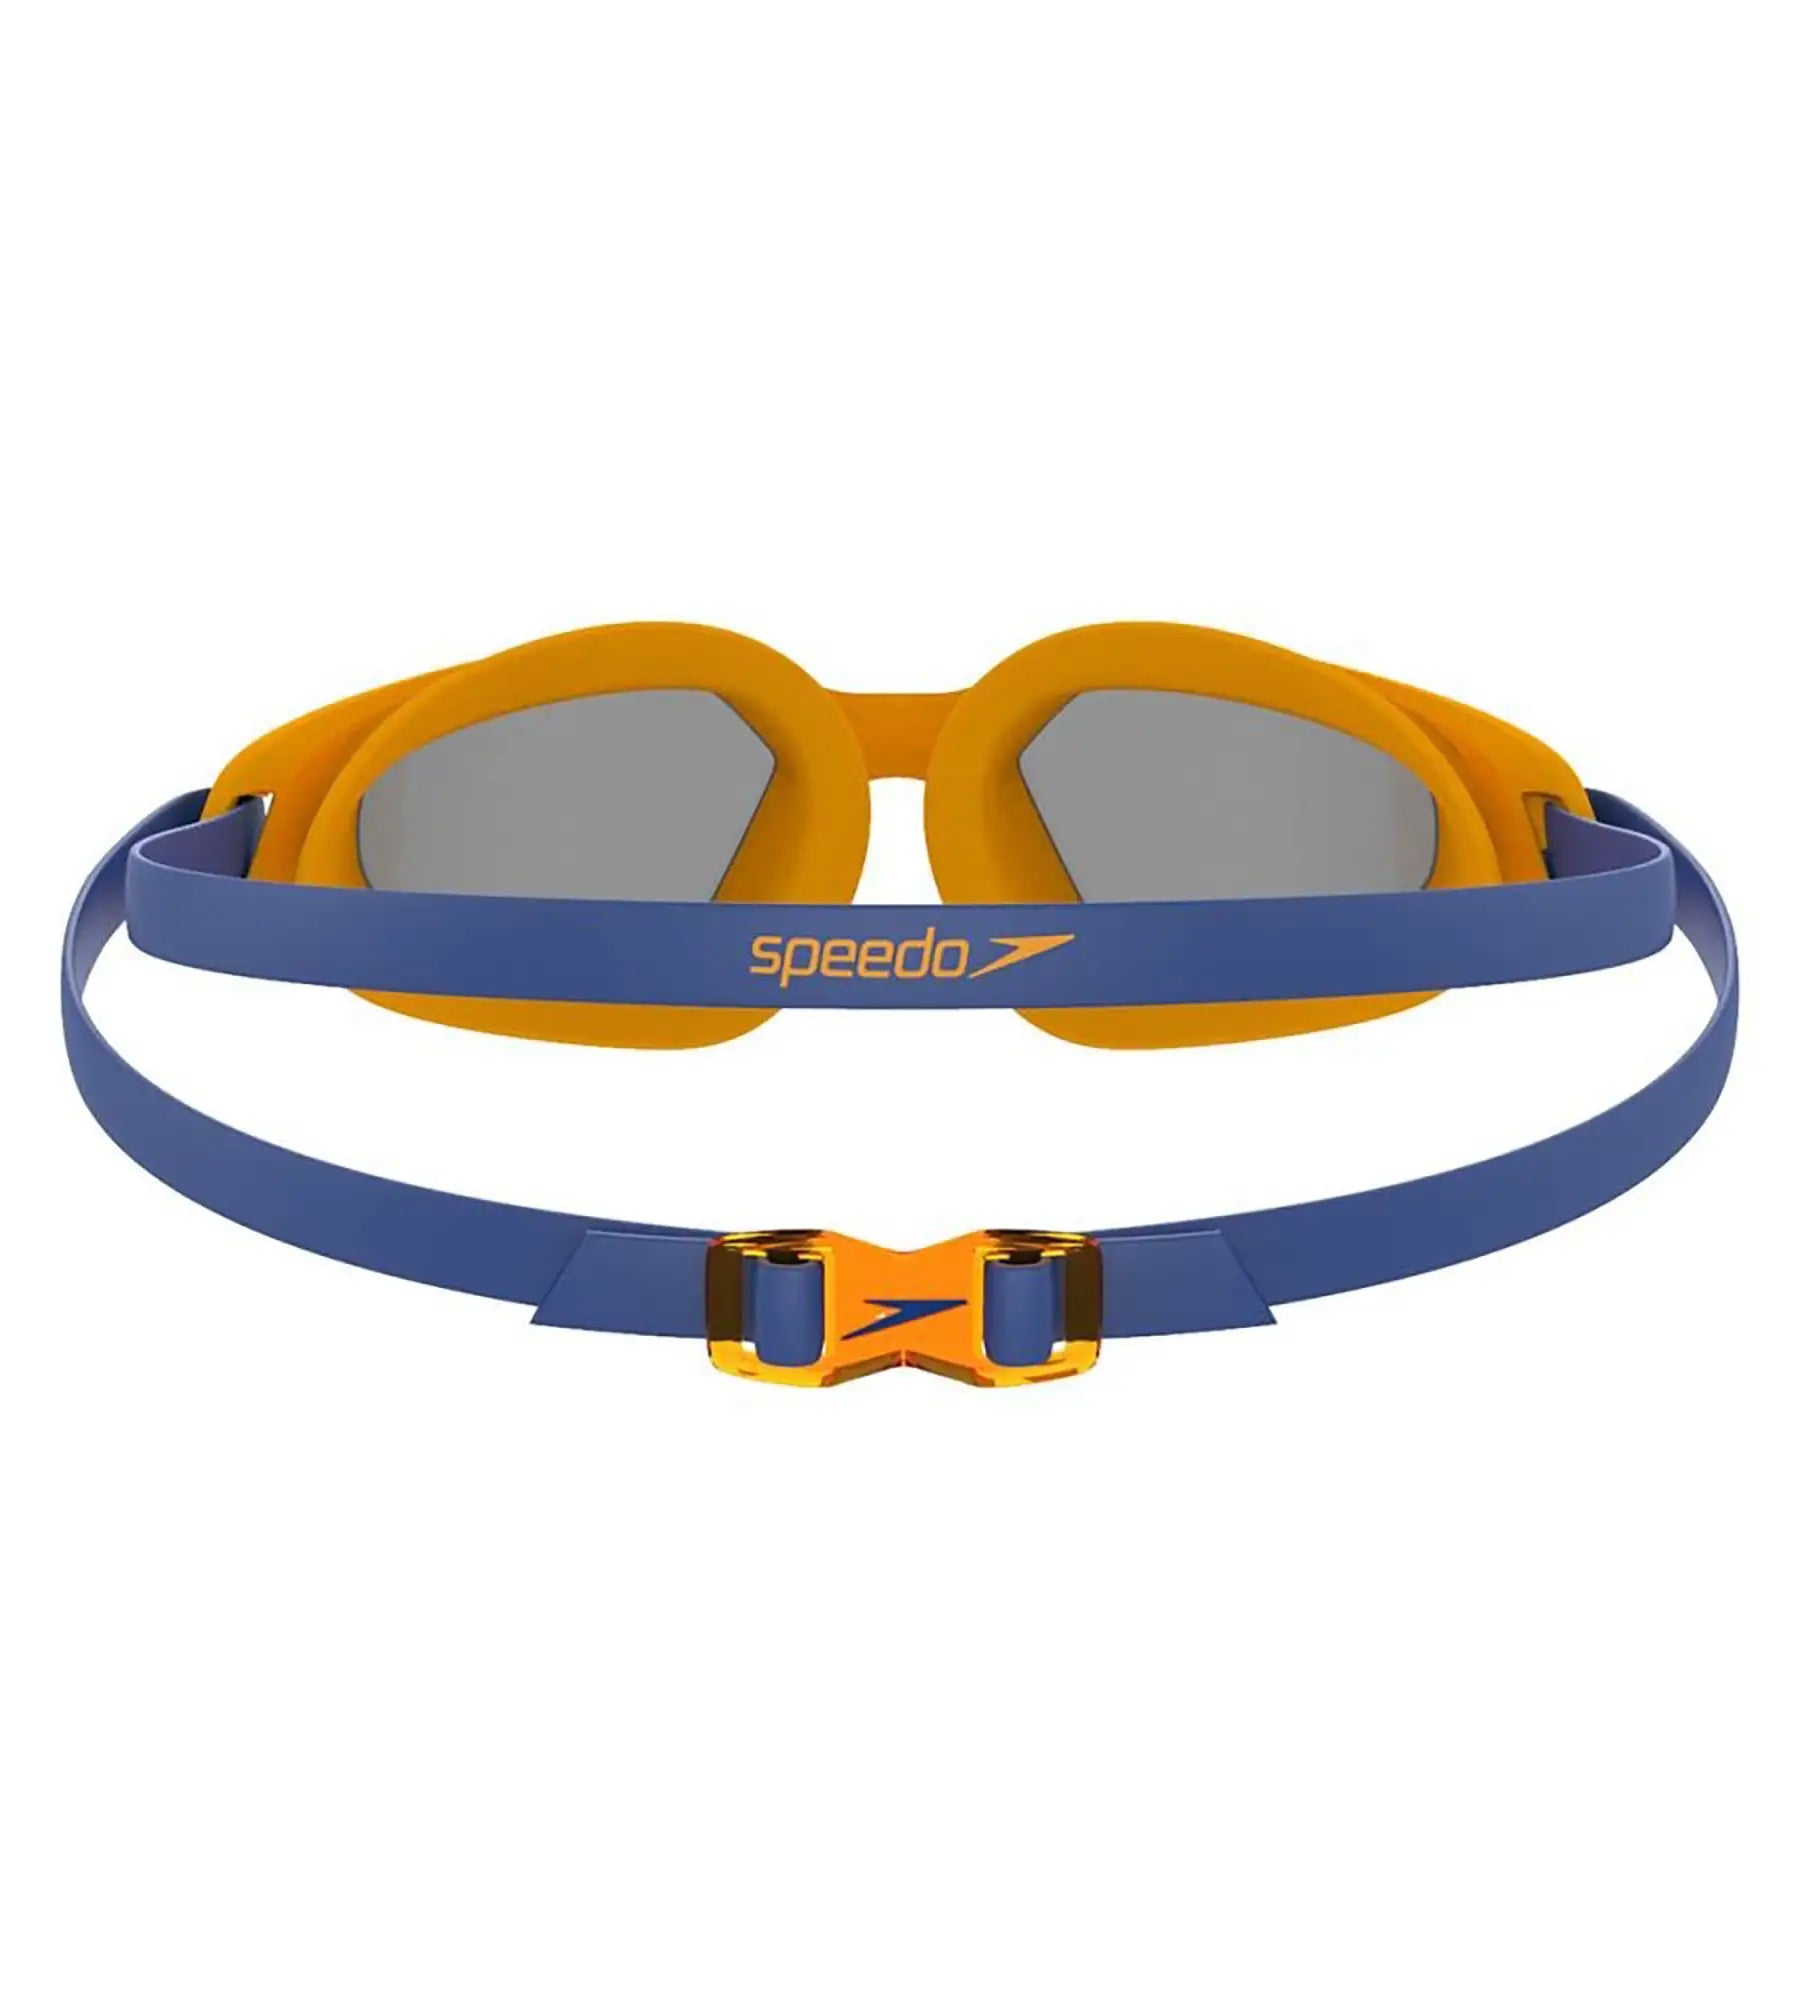 Unisex Junior Hydropulse Tint-Lens Goggles - Blue & Orange_2